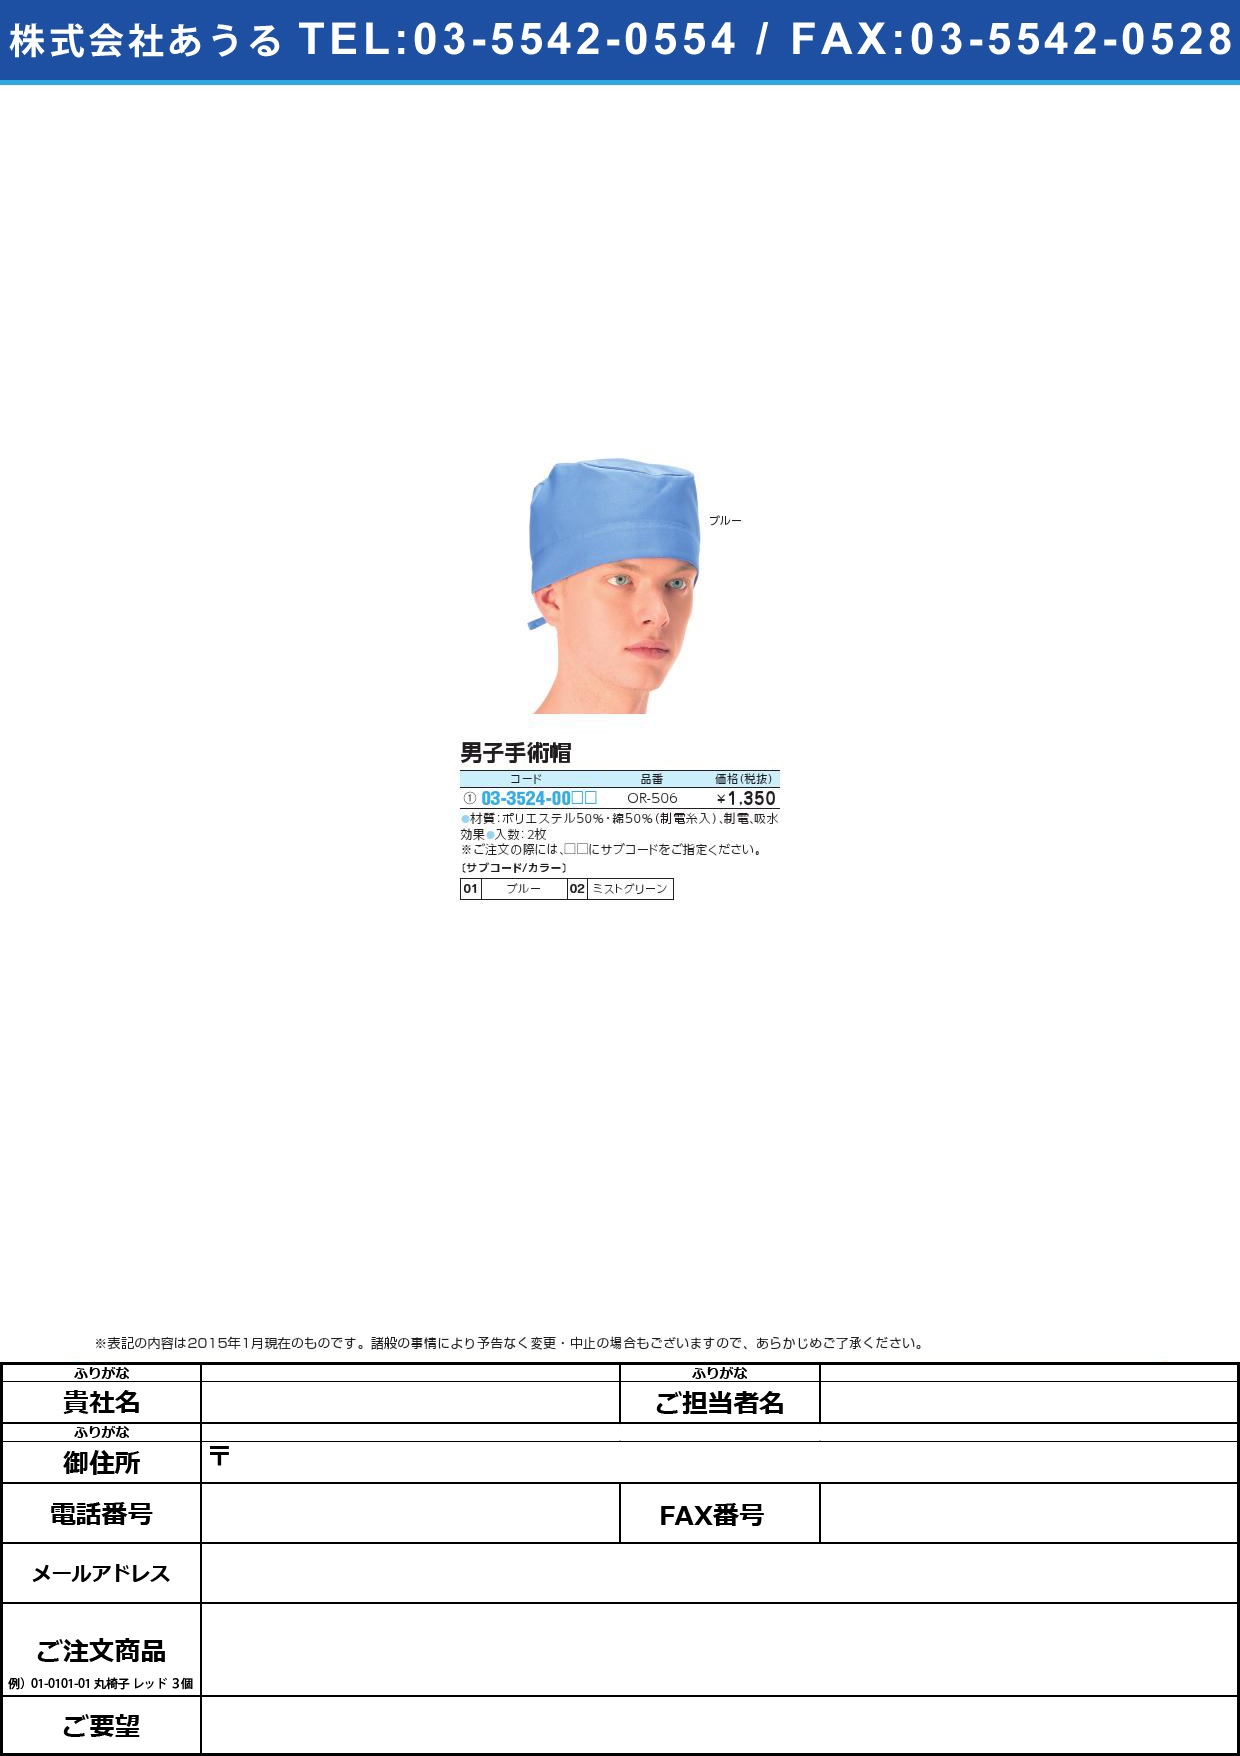 (03-3524-00)男子手術帽（２枚組） ﾀﾞﾝｼｼｭｼﾞｭﾂﾎﾞｳ2ﾏｲｸﾞﾐ(03-3524-00)OR-506(ﾌﾘｰ)ブルー【1組単位】【2015年カタログ商品】